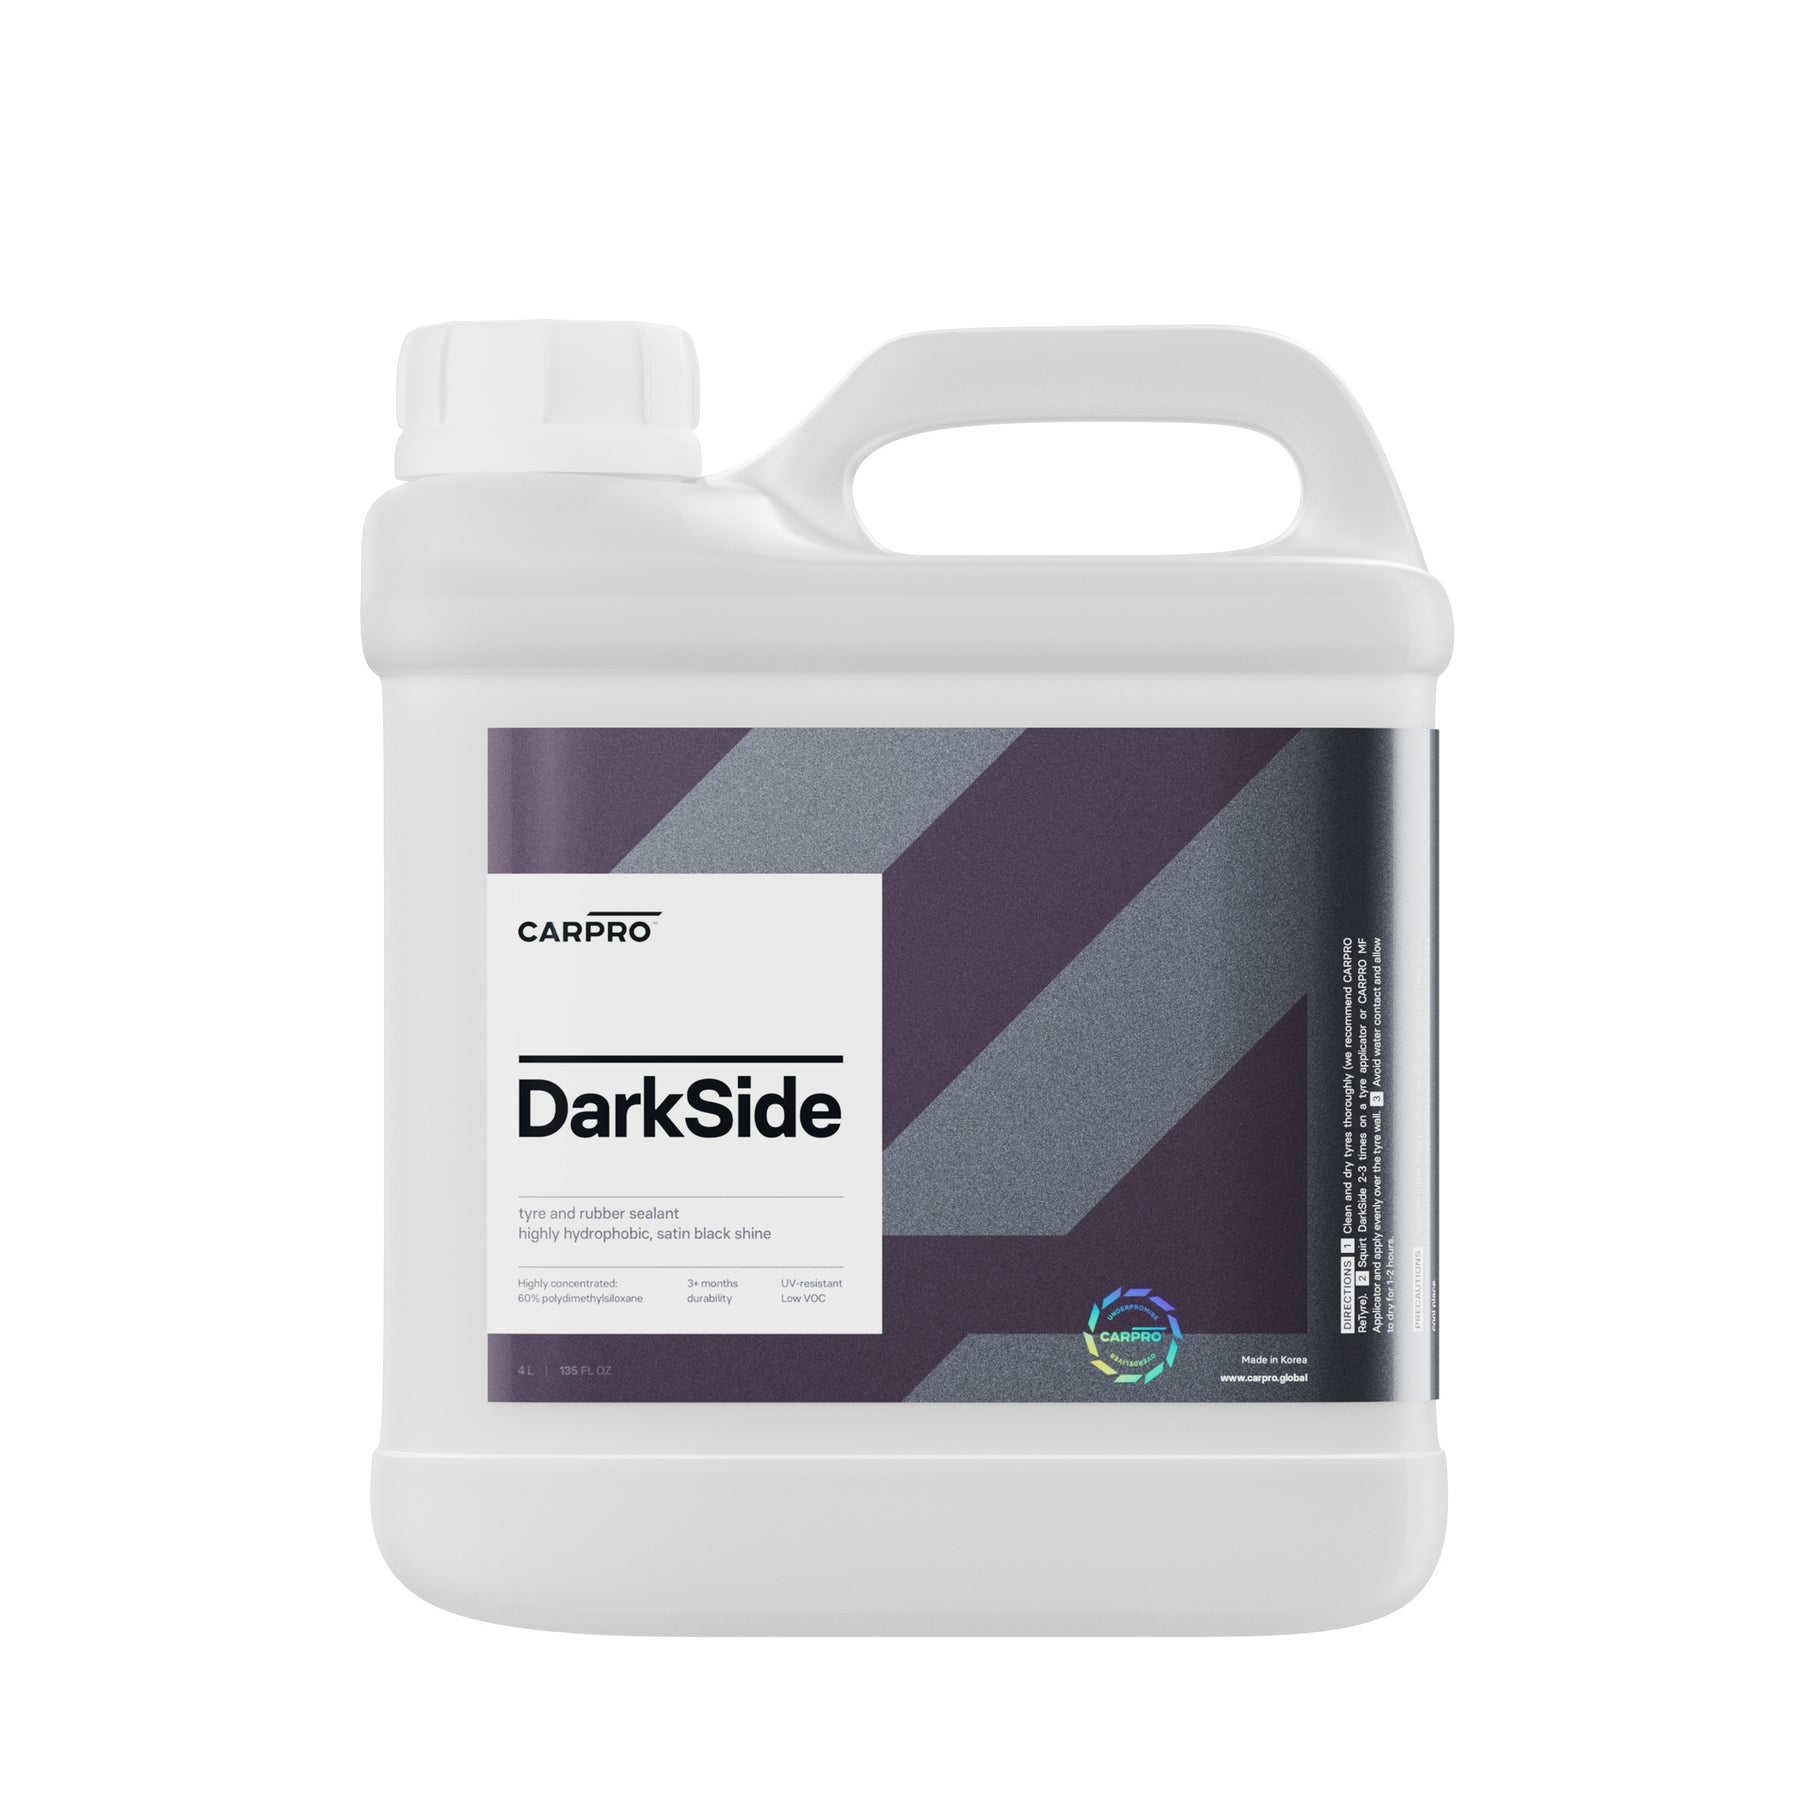 Flacone di CARPRO DarkSide su sfondo bianco, sigillante per pneumatici che offre protezione duratura e effetto bagnato.